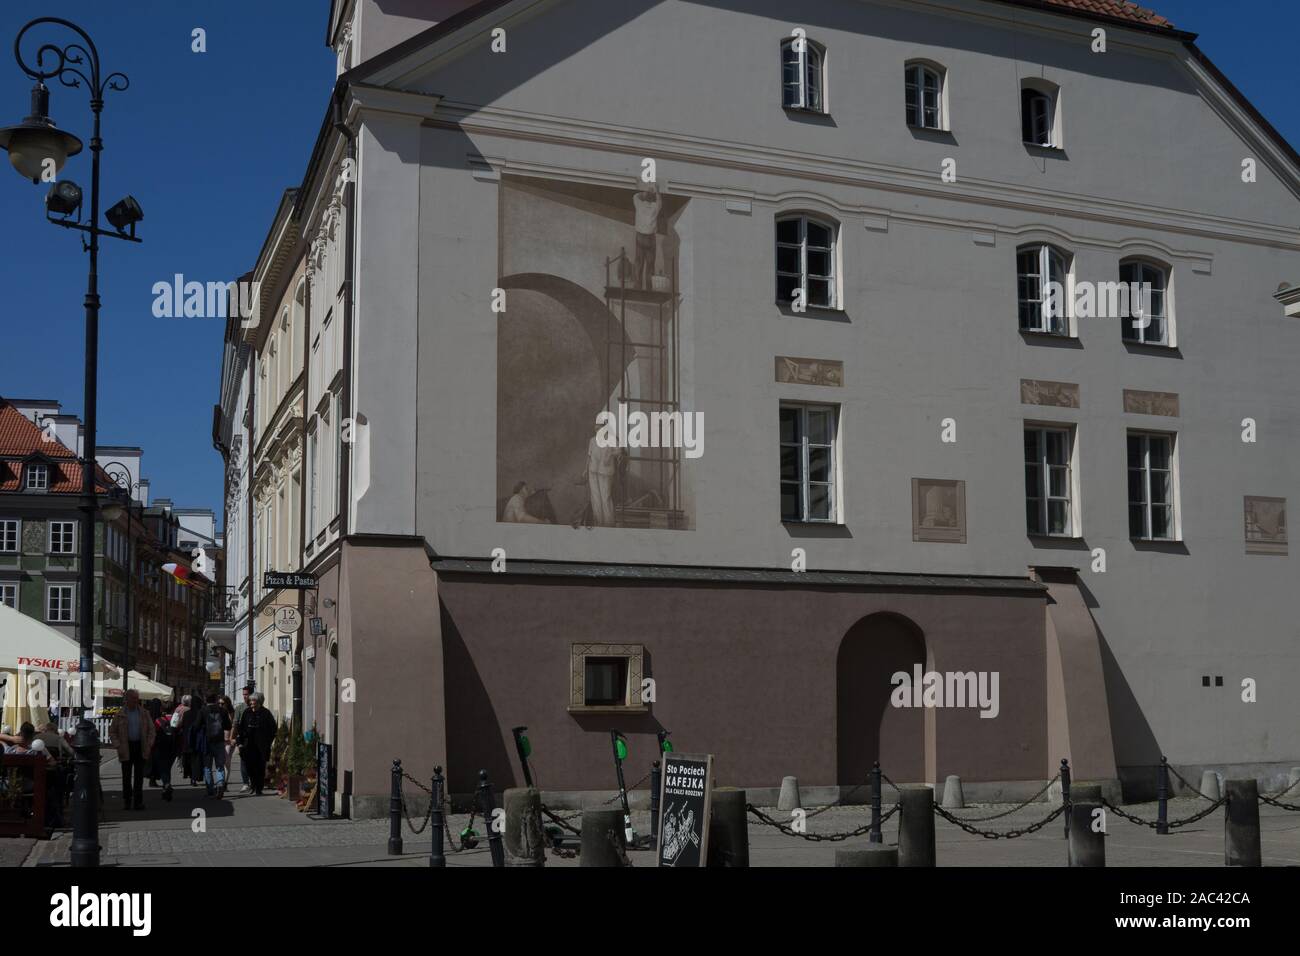 Tenement House de Wojciech Wielądka Gidelski (Jan), fresque commémorant la reconstruction de la vieille ville de Bohdan Urbanowicz, Varsovie, Pologne Banque D'Images